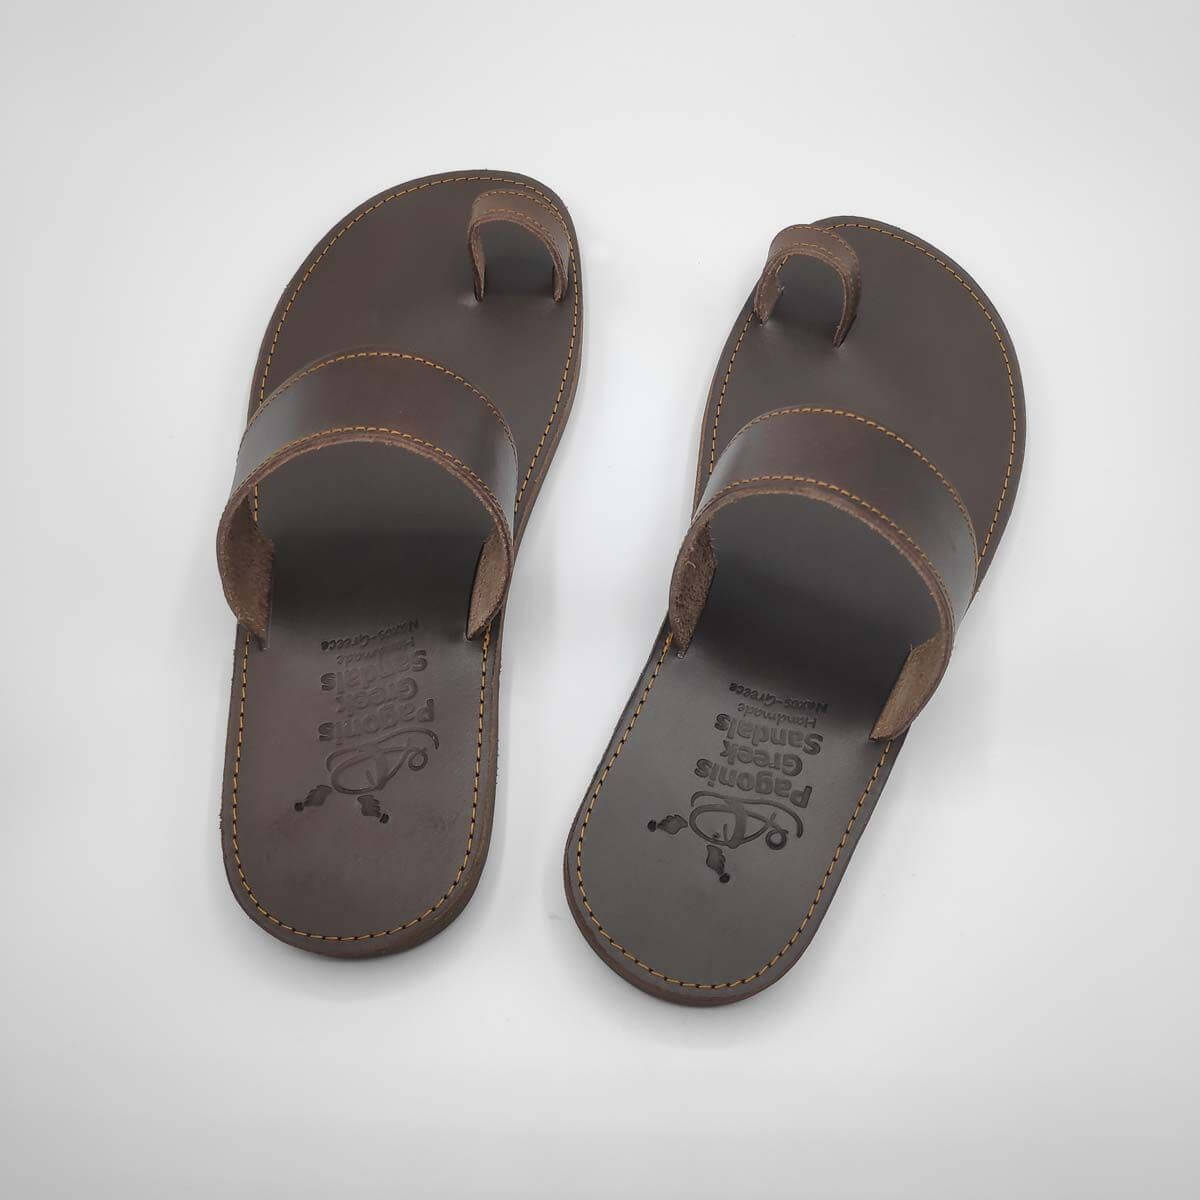 Jesus Sandals Mens - Men Toe Loop Slide Leather Sandals | Pagonis Greek ...